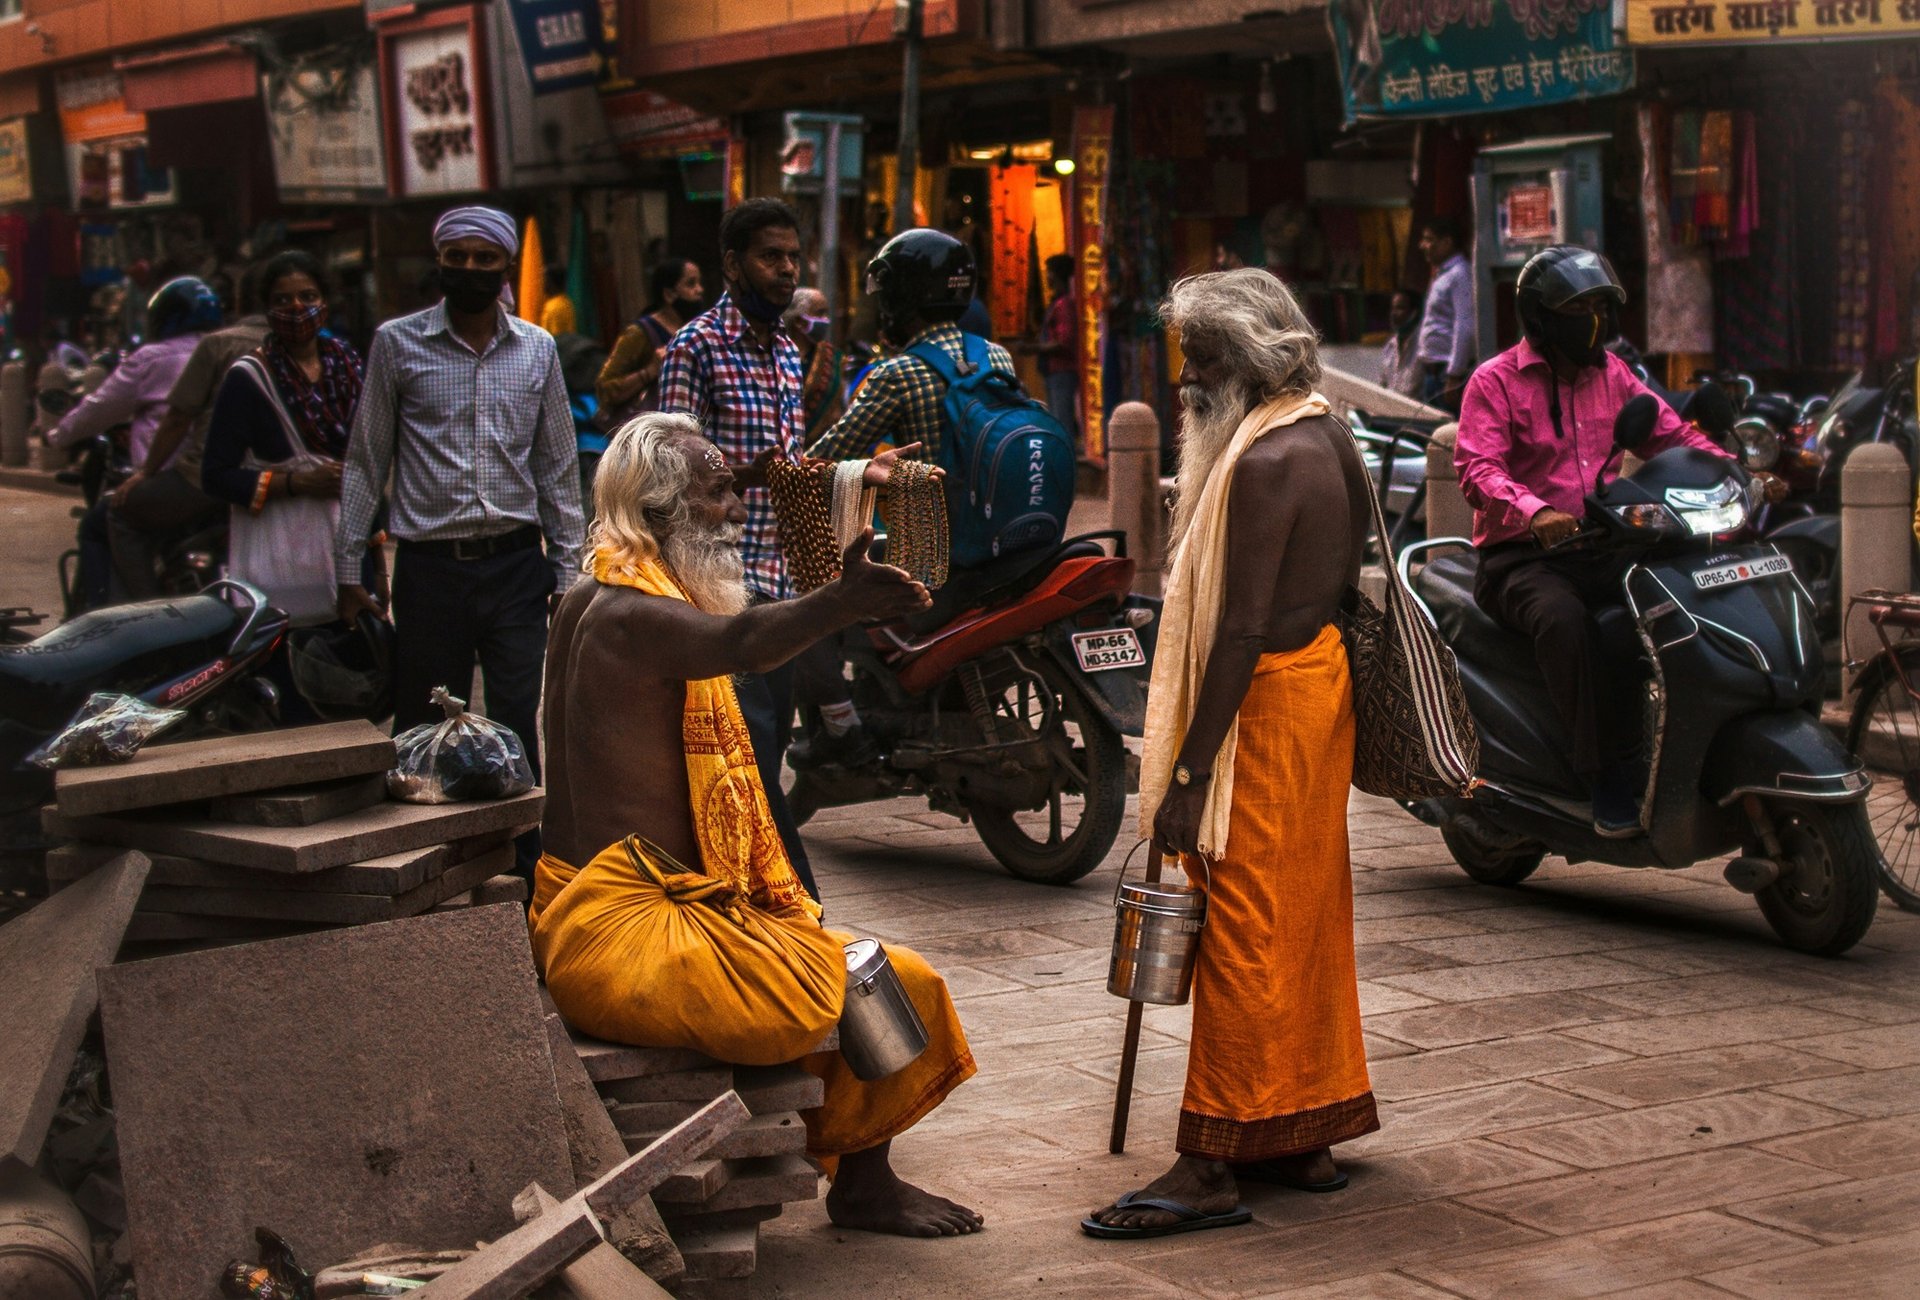 Rencontre avec le peuple indien   Inde, Varanasi